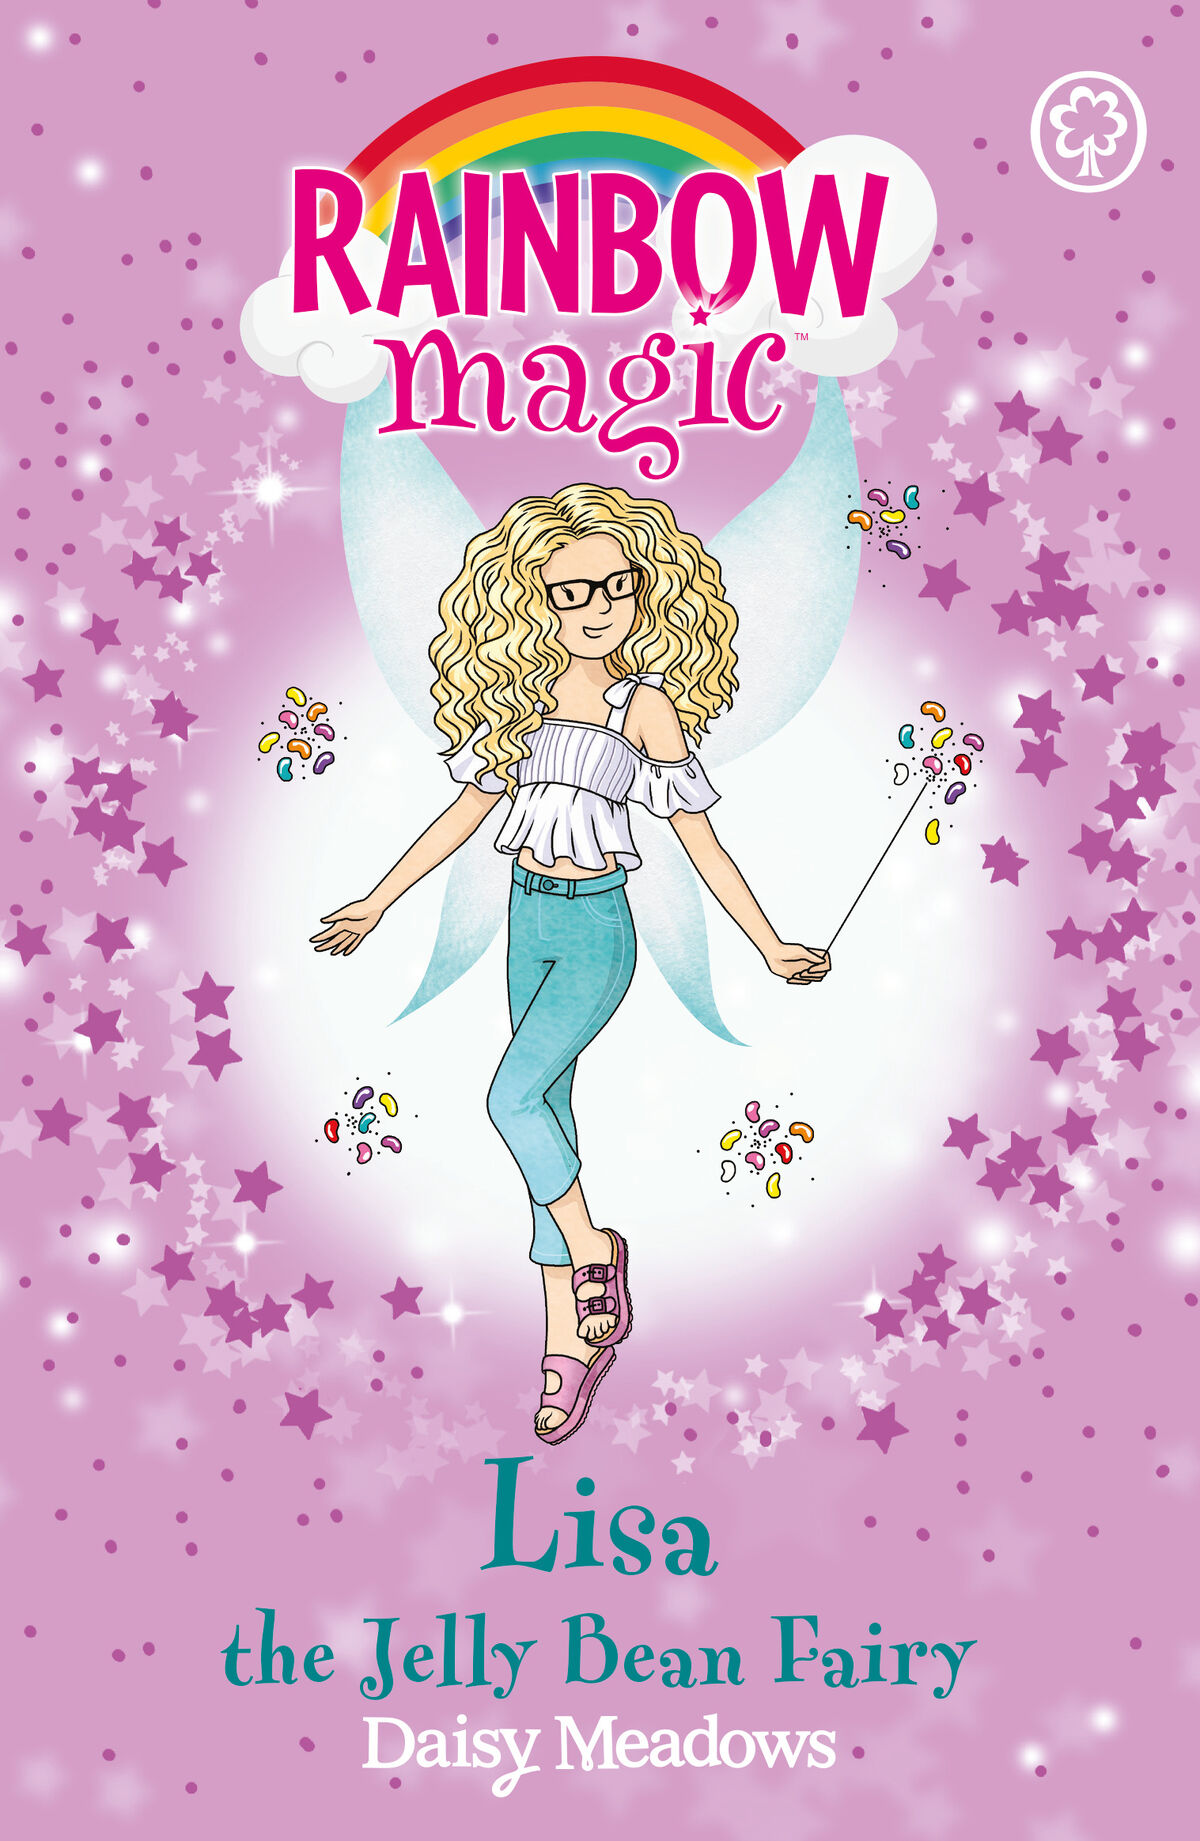 Lisa the Jelly Bean Fairy | Rainbow Magic Wiki | Fandom